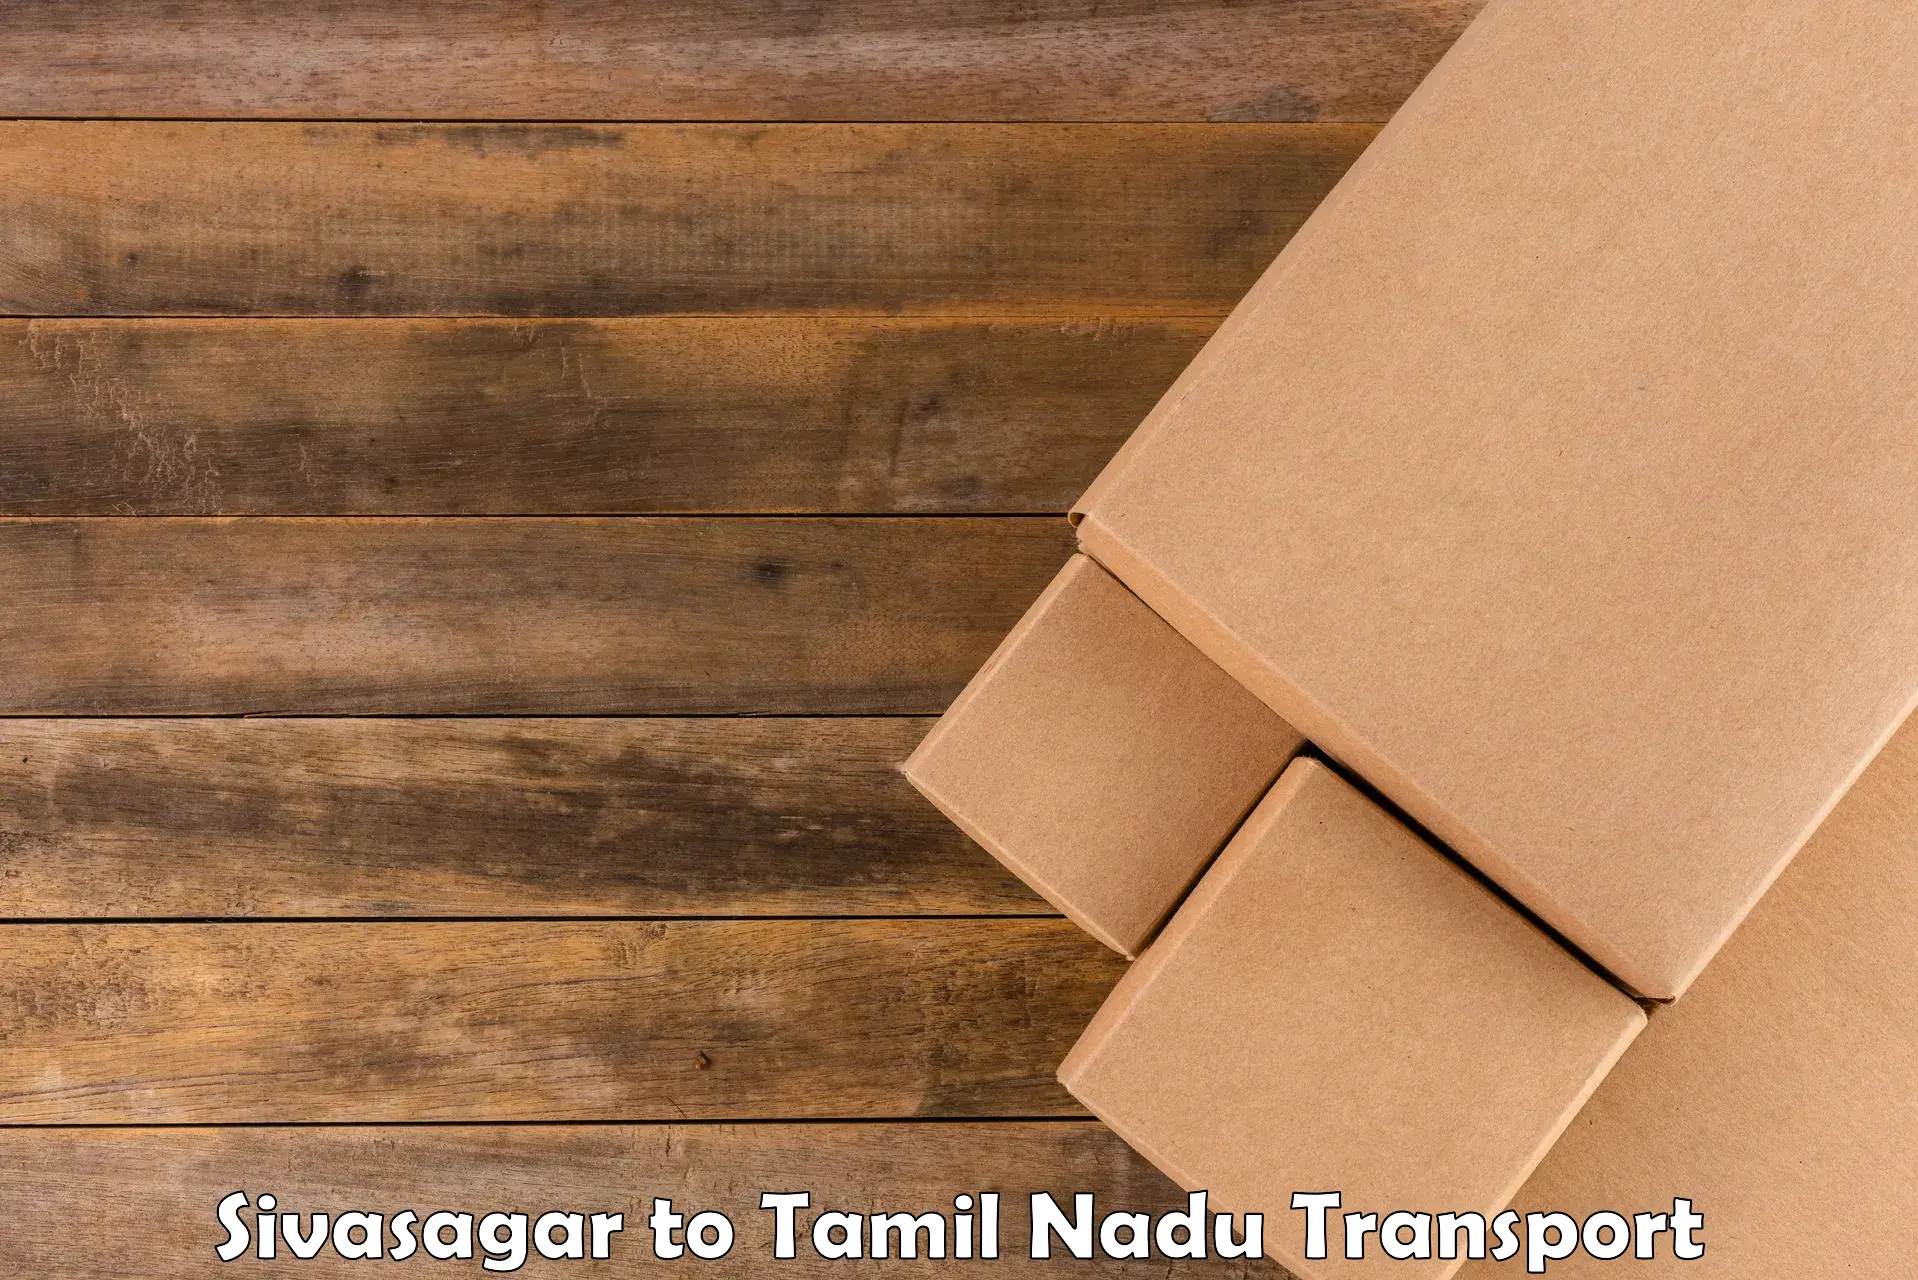 Commercial transport service Sivasagar to Tamil Nadu